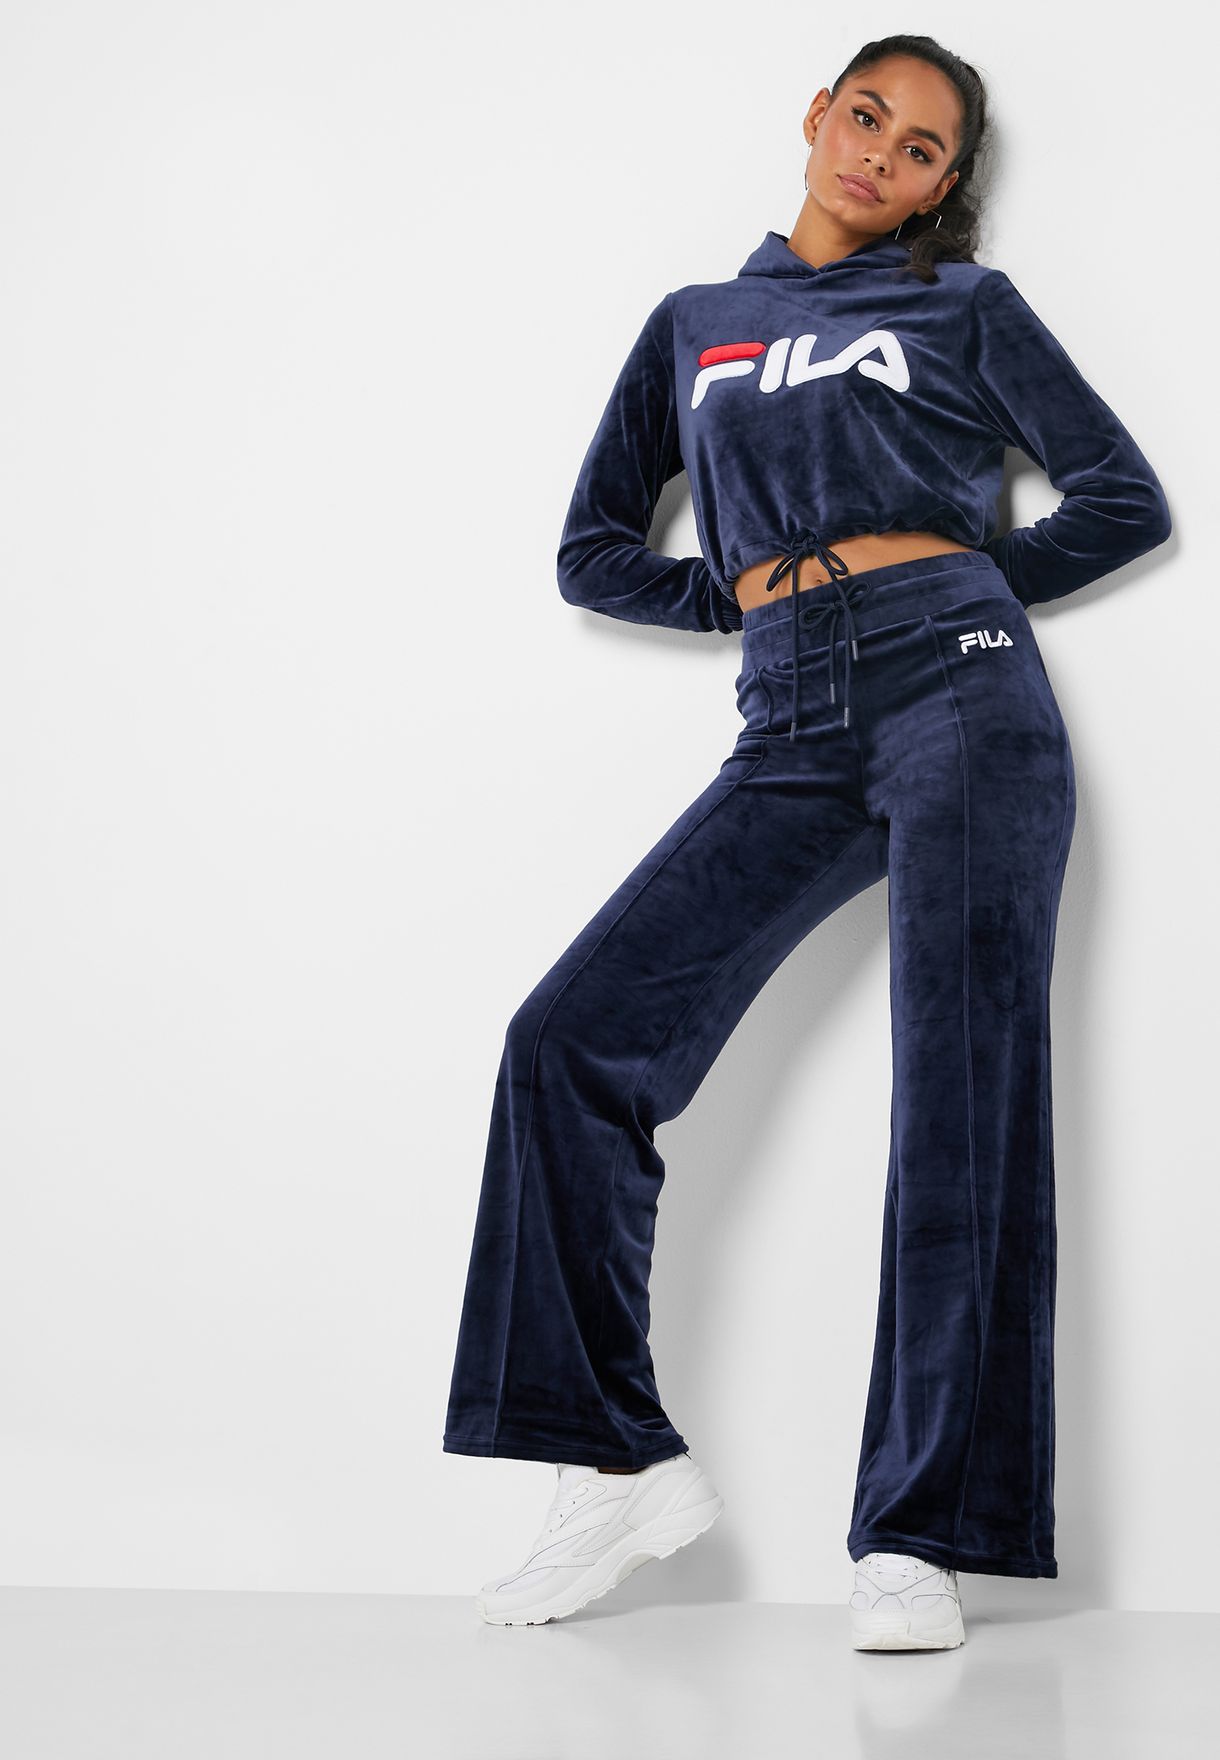 Buy > fila pants women's > in stock